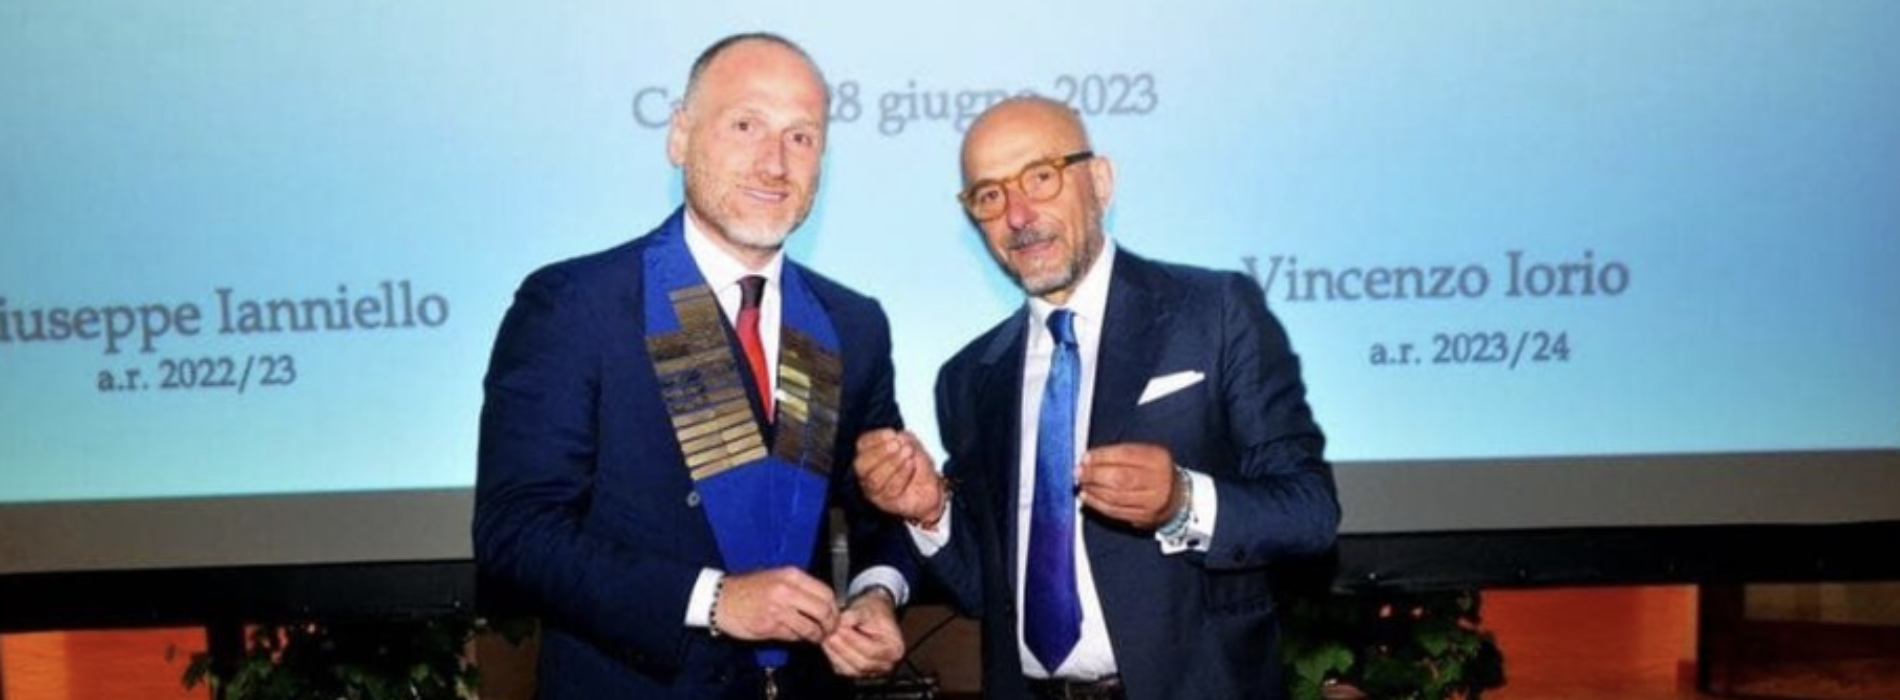 Rotary Caserta Terra di Lavoro, Vincenzo Iorio presidente